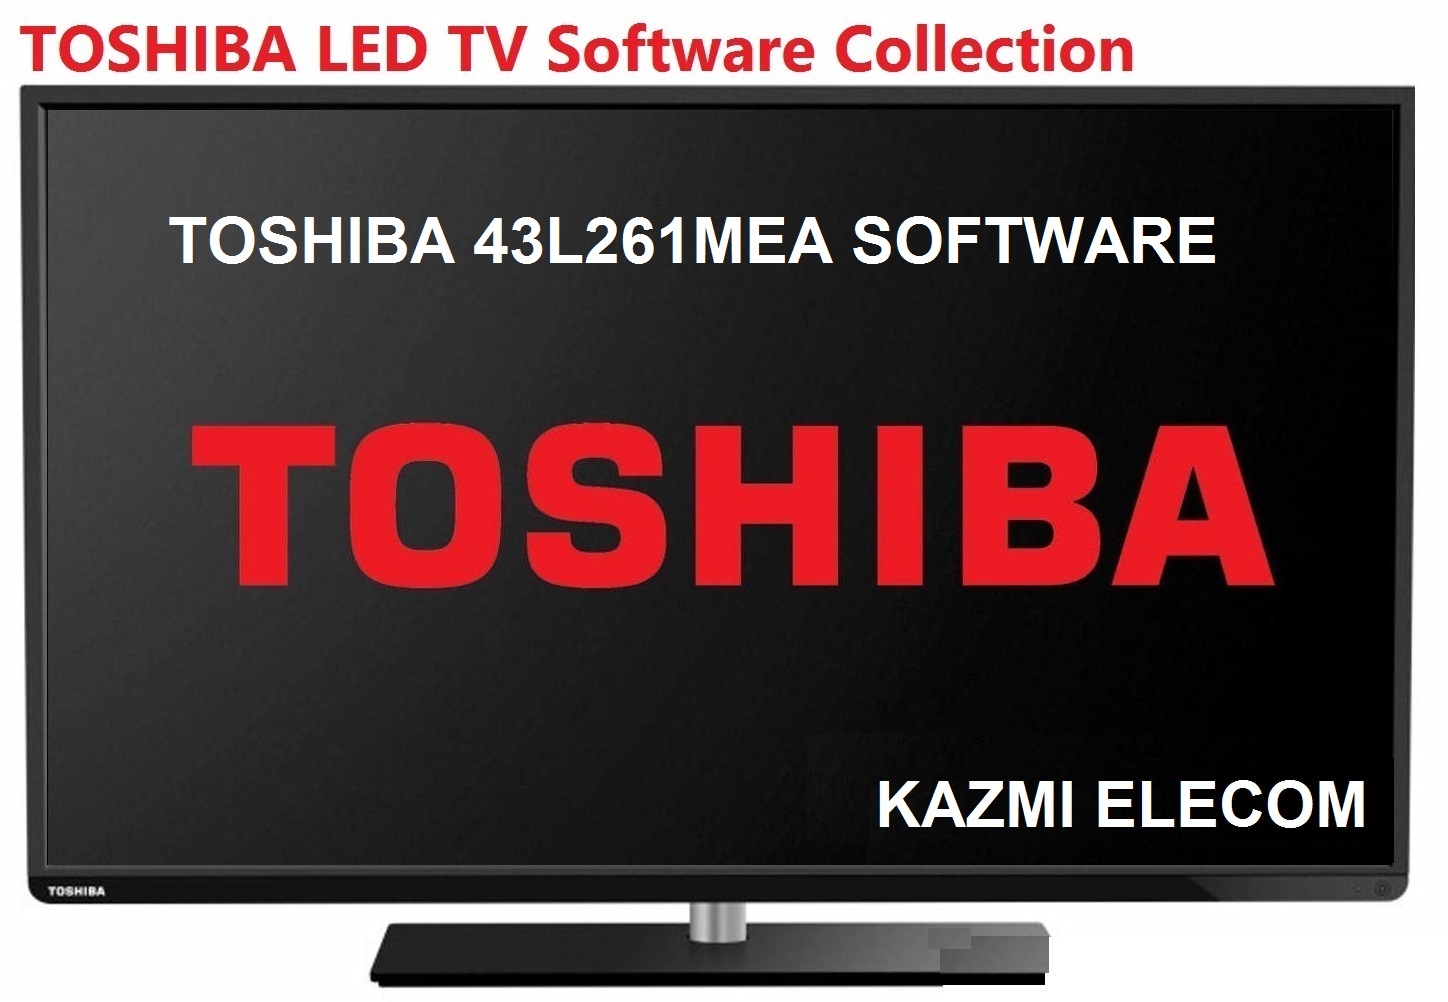 Toshiba 43L261Mea